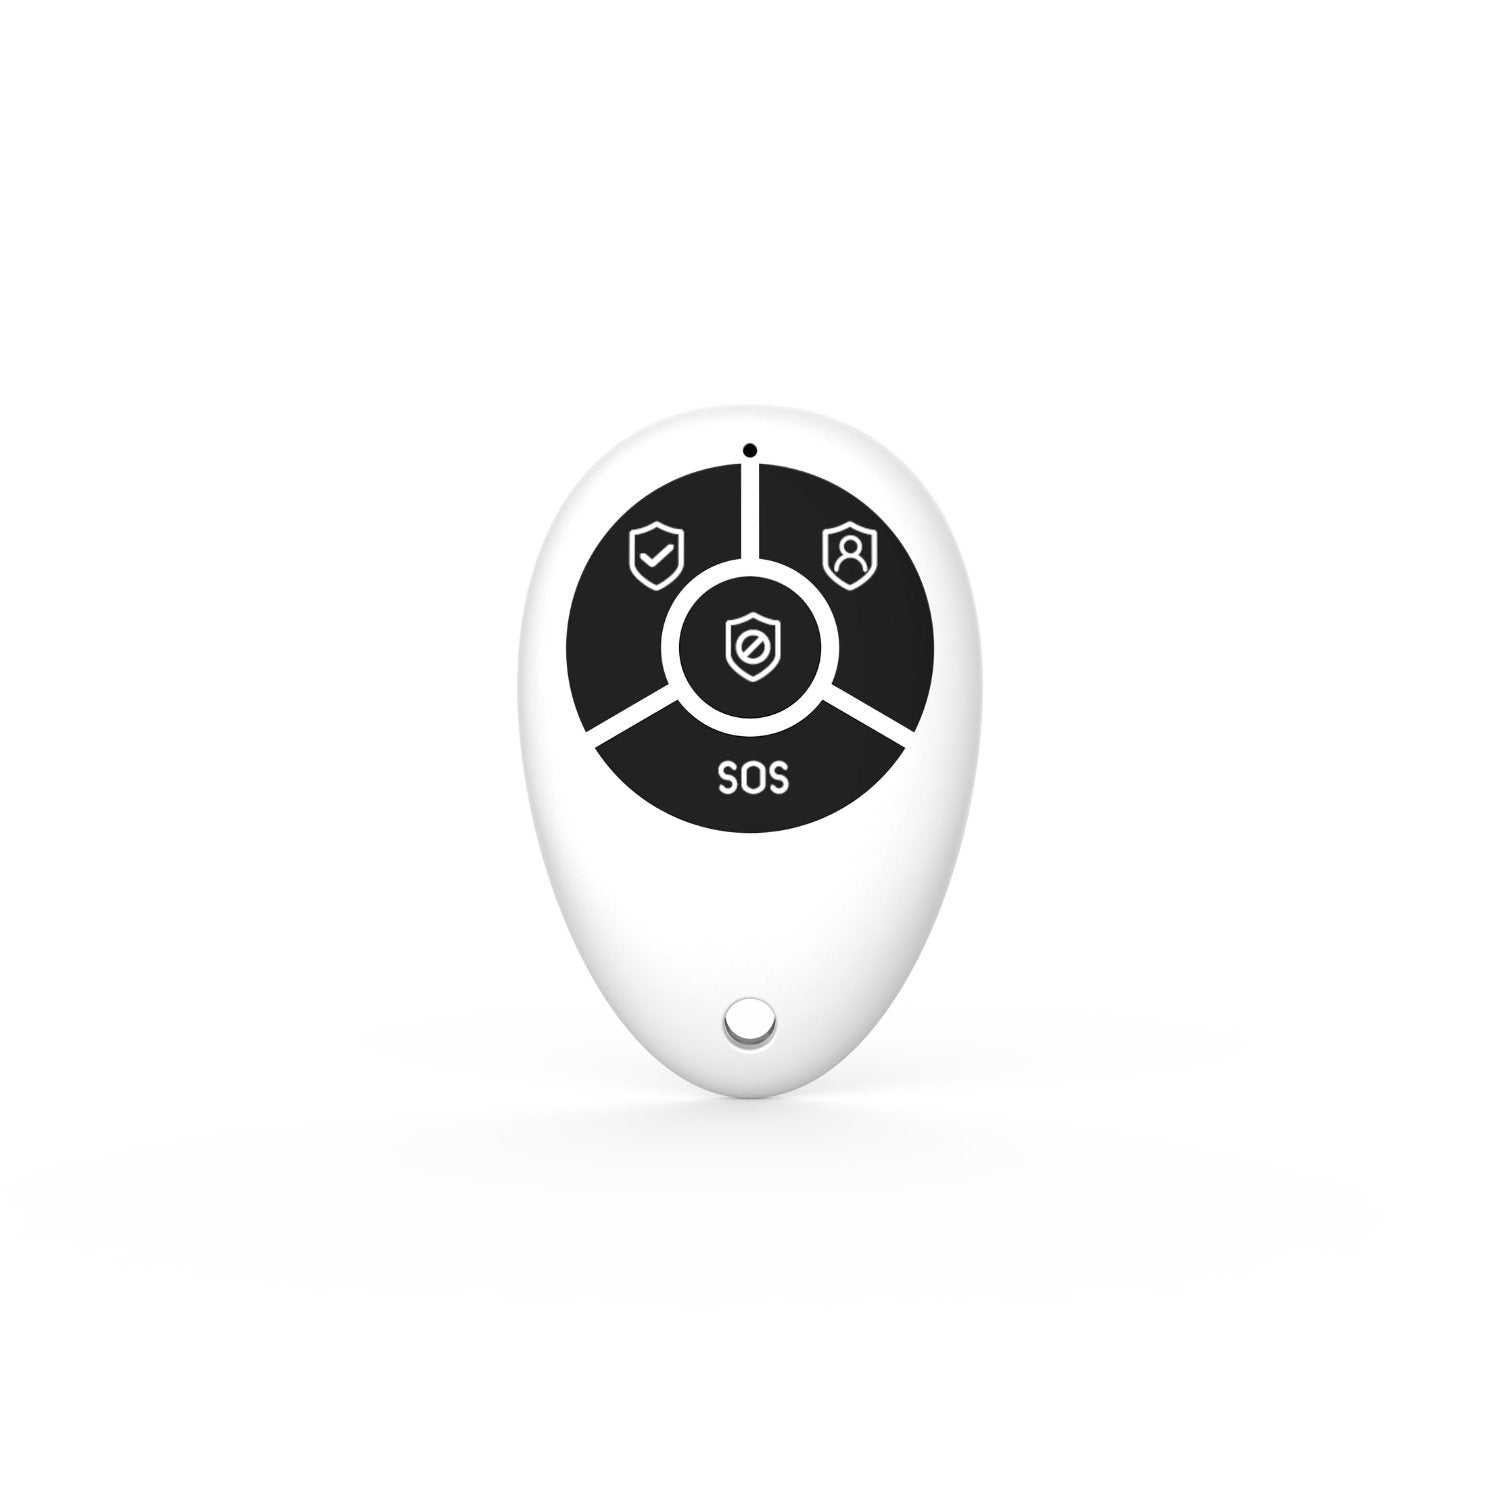 NOUVEAU - Configurez votre propre système d'alarme AM301/302 !! - Daewoo Security